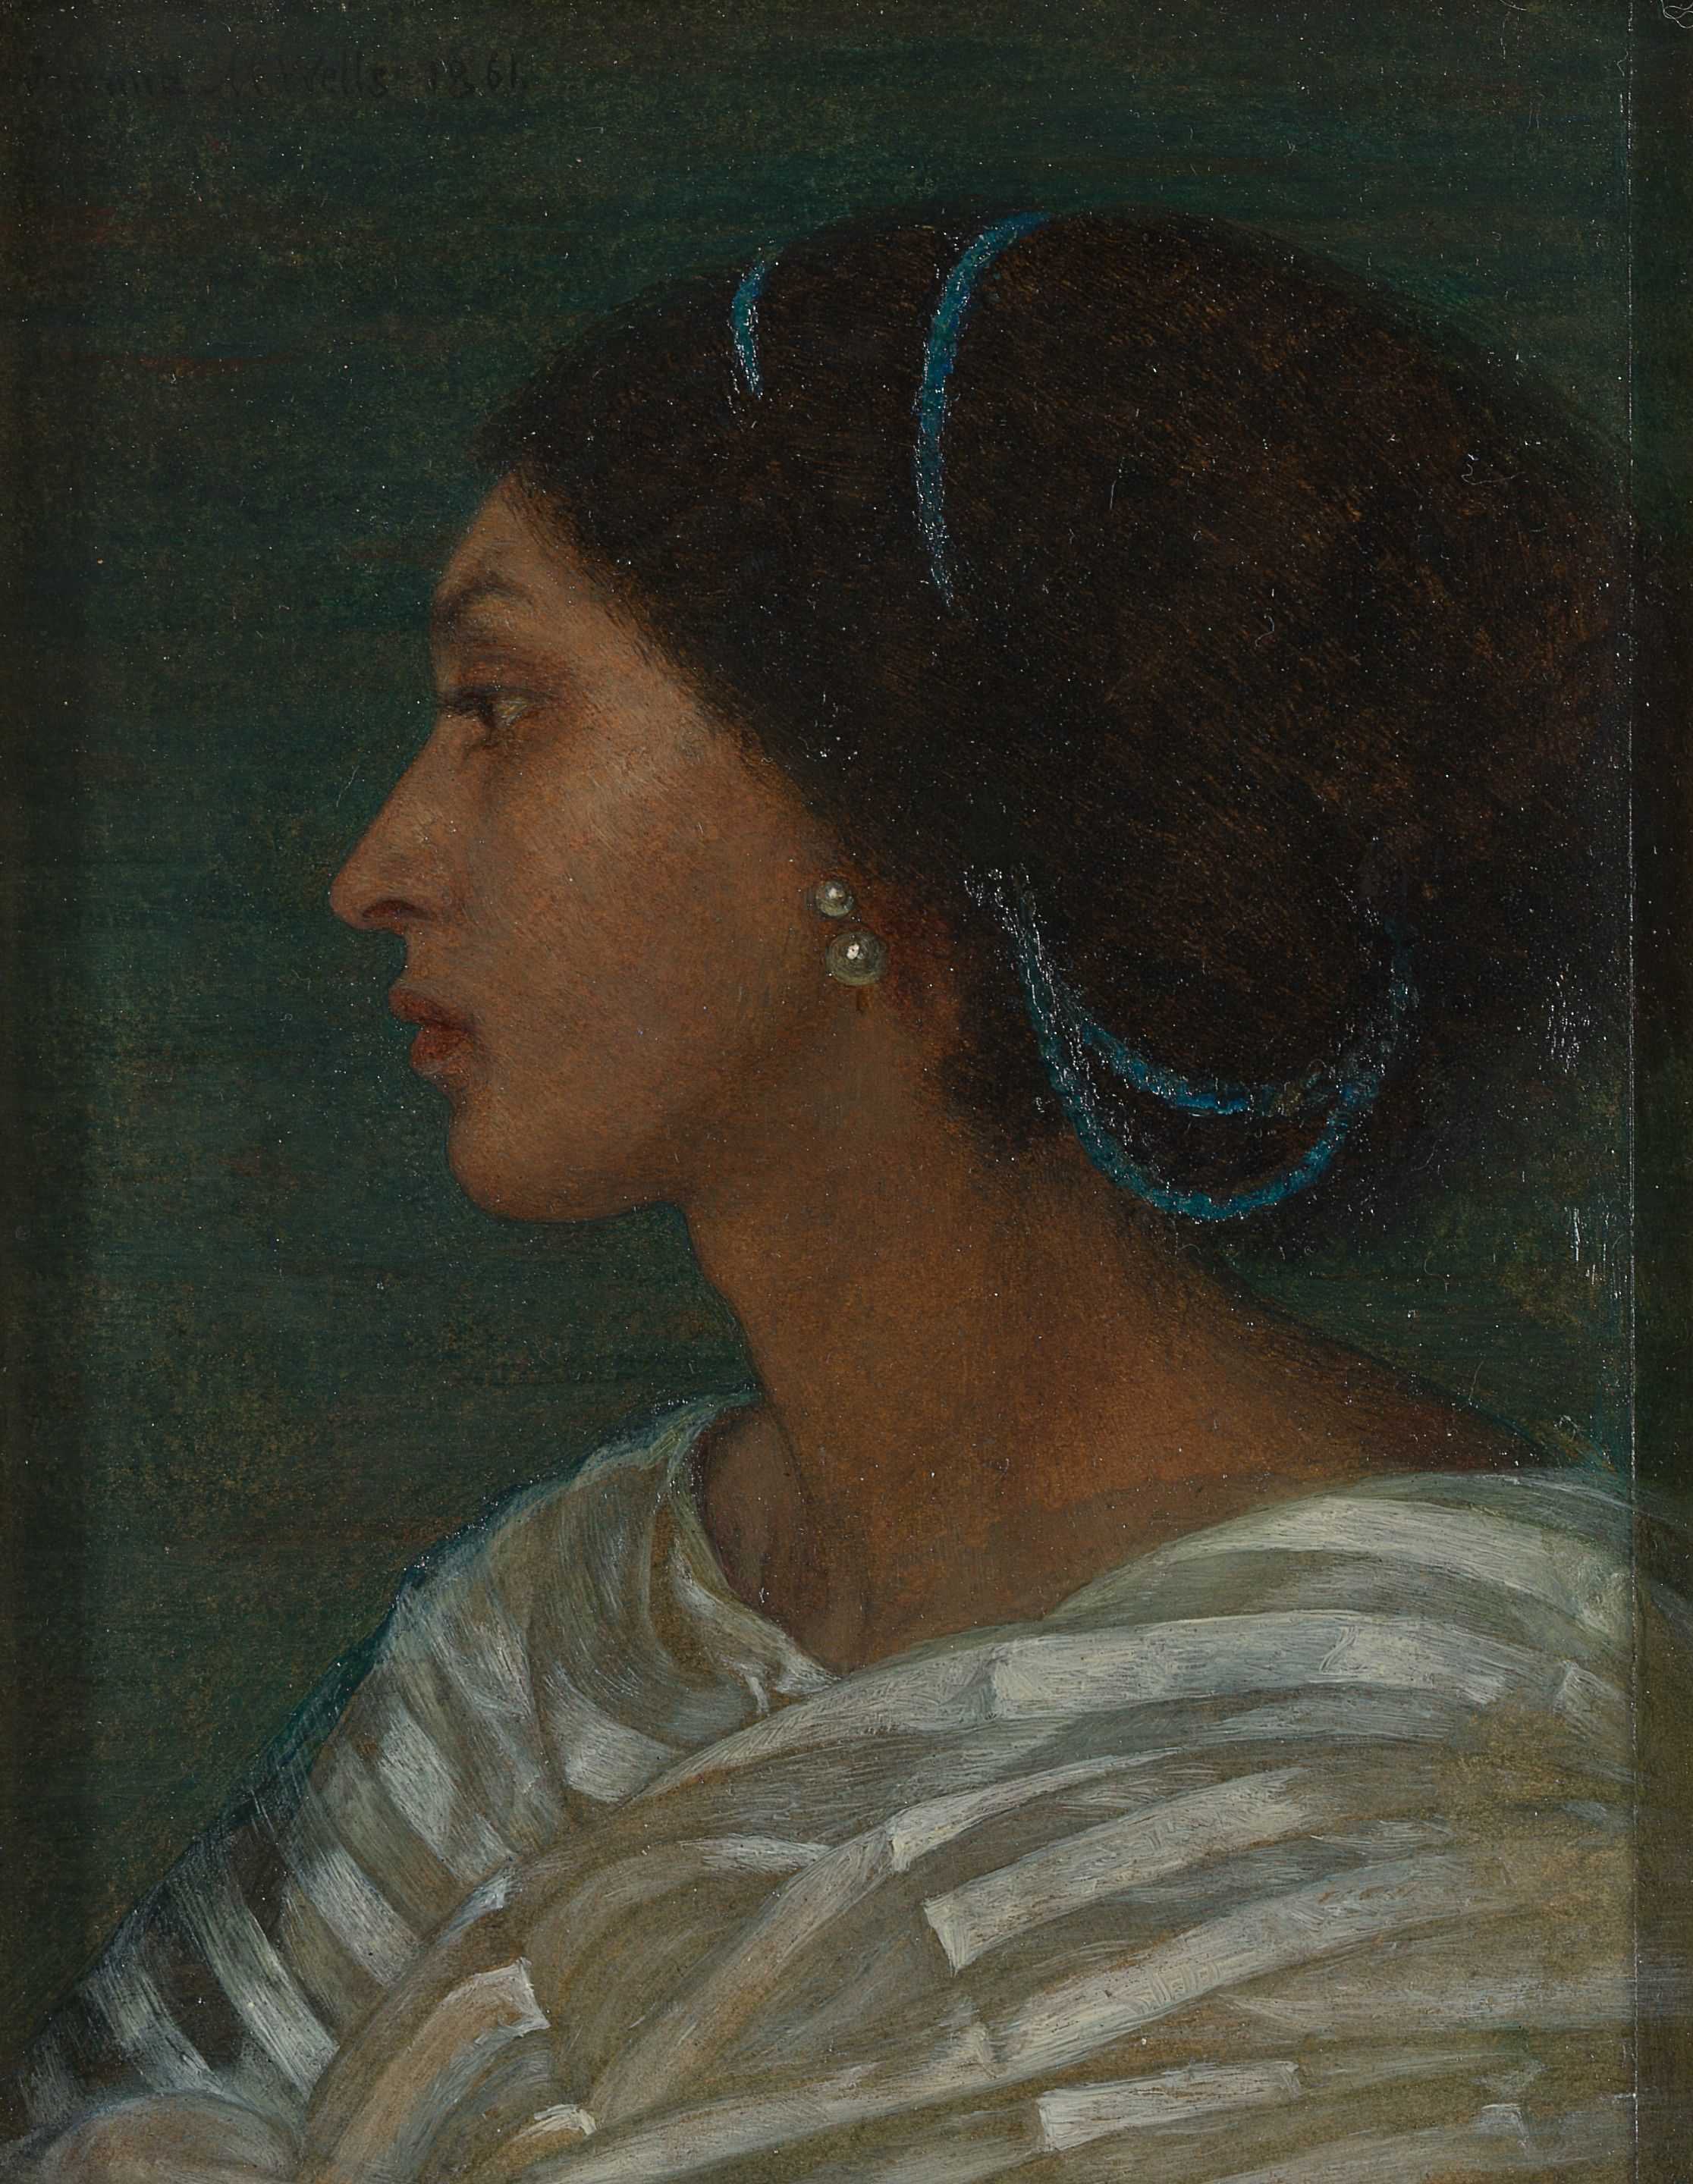 Фани Итон by Joanna Boyce Wells - 1861. - 17,1 x 13,7 cm 